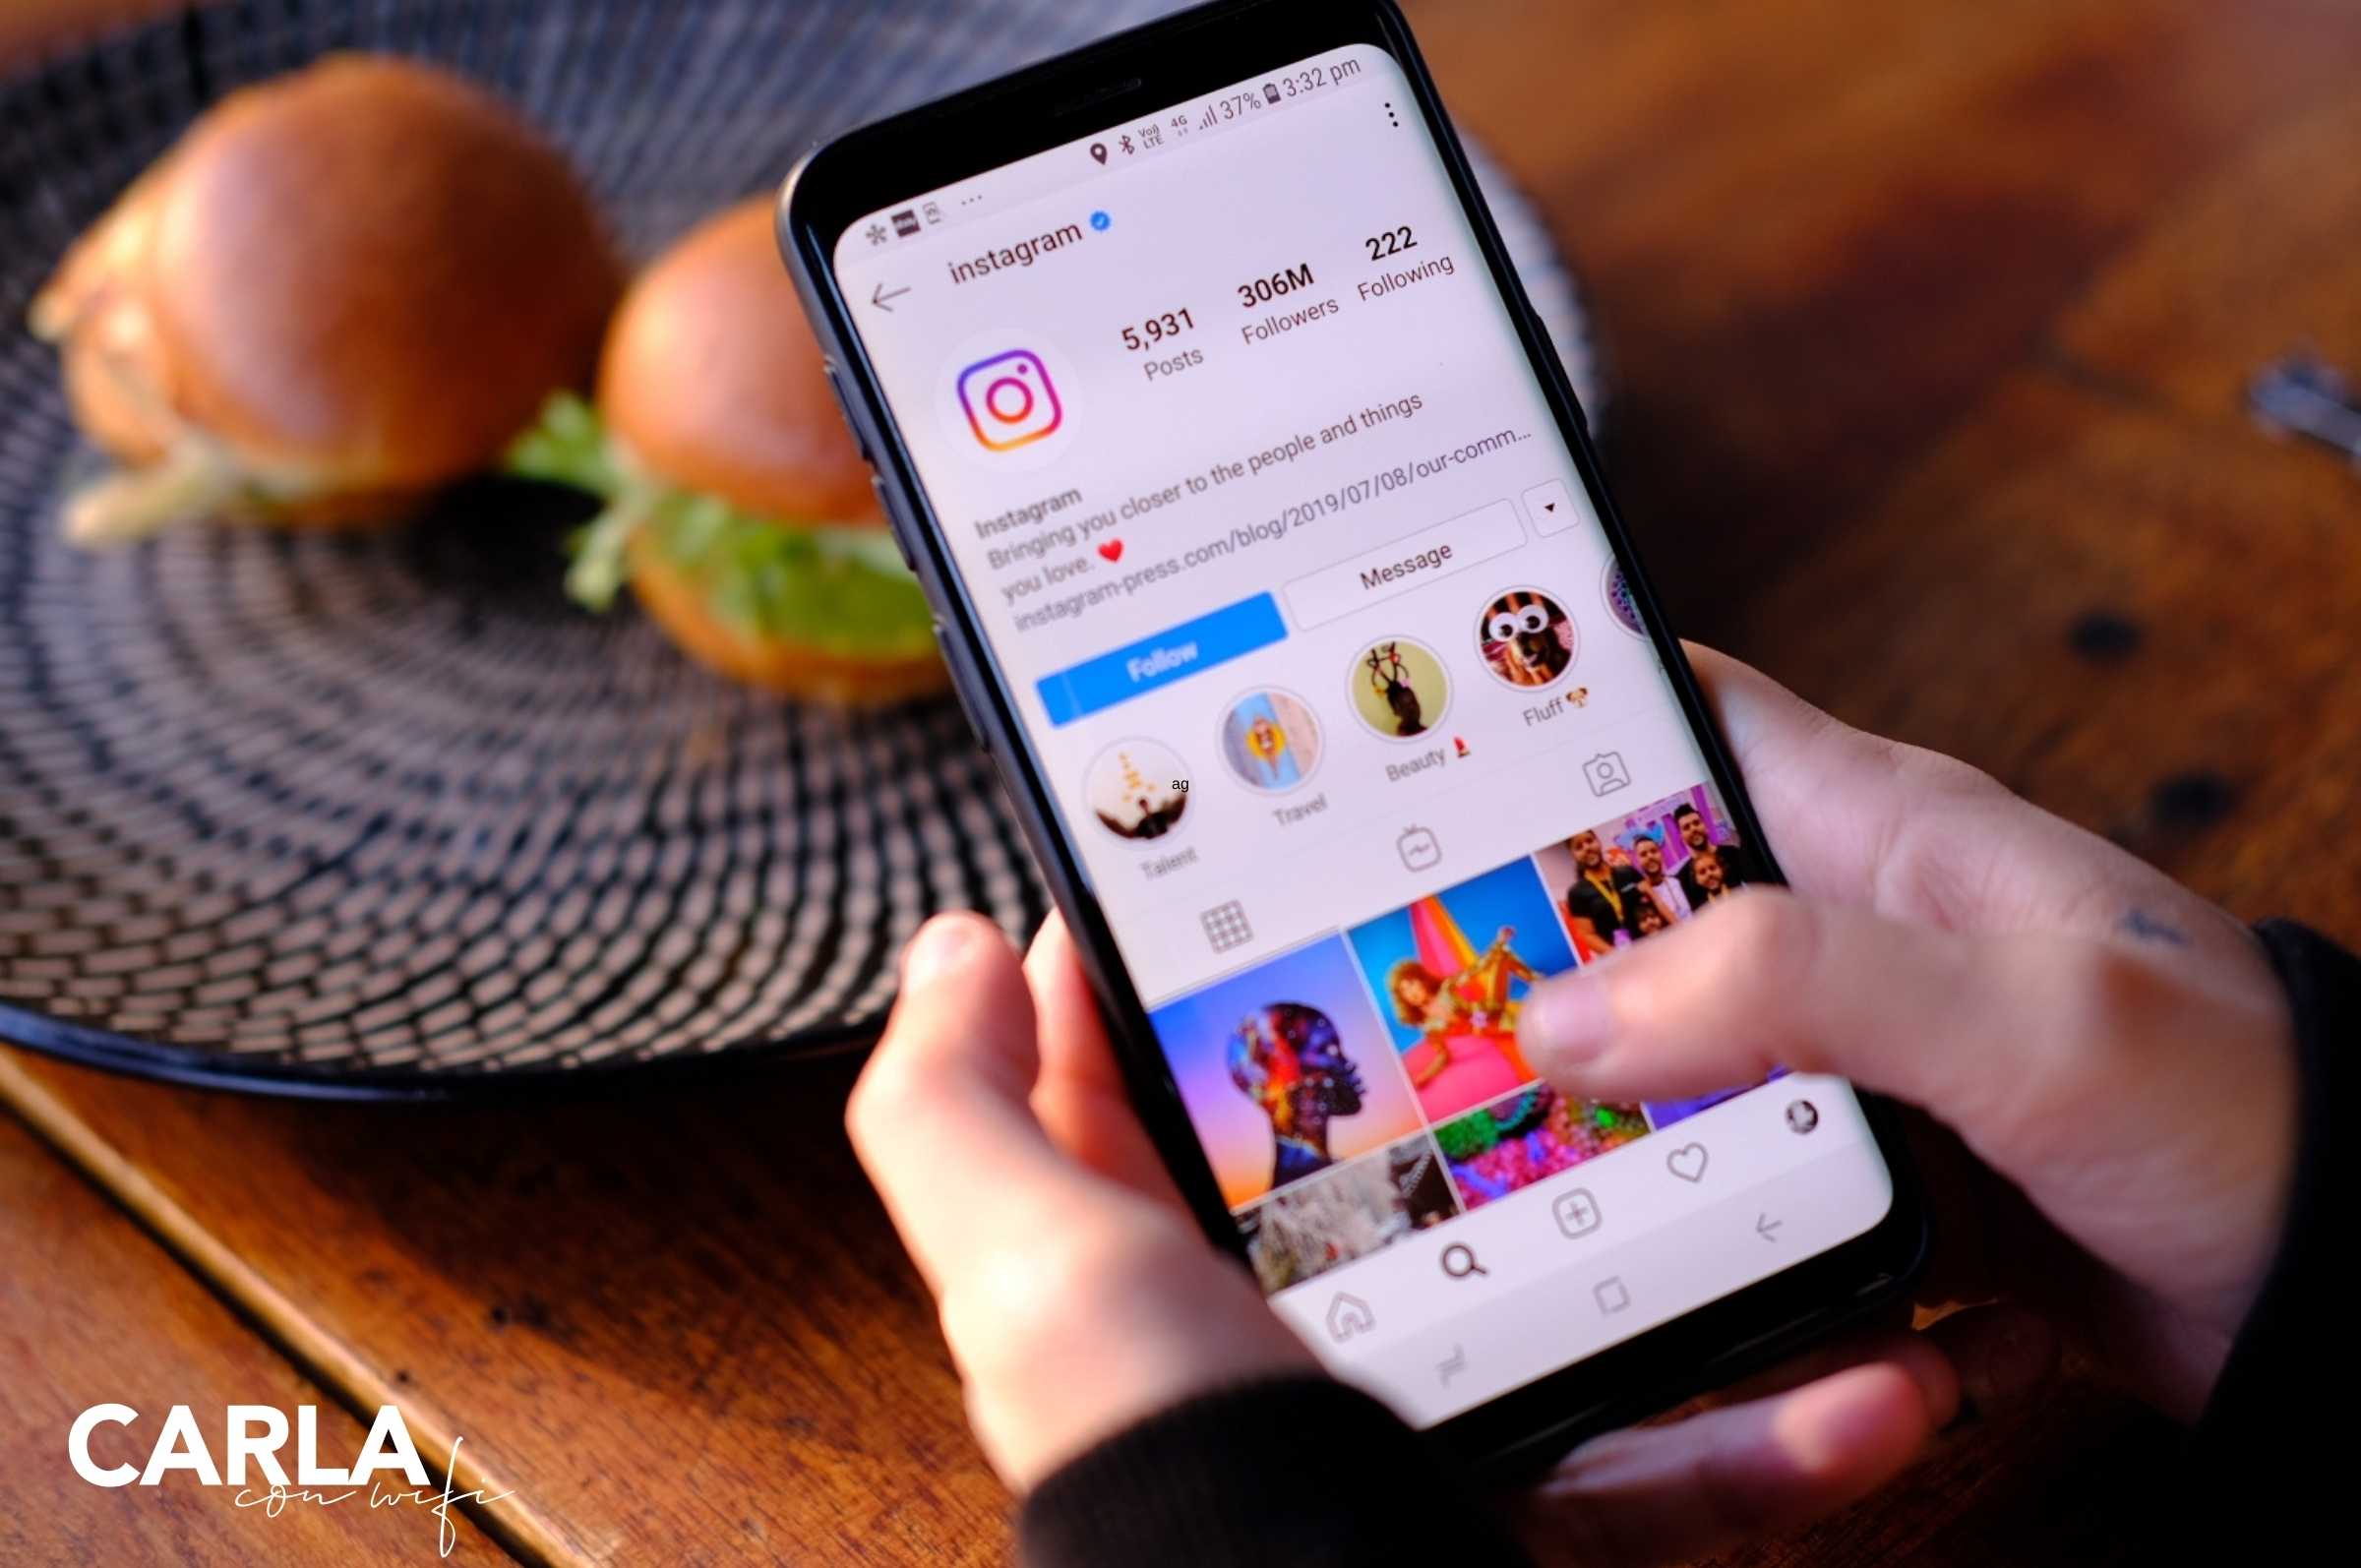 Las suscripciones en Instagram cambian la dinámica en redes sociales